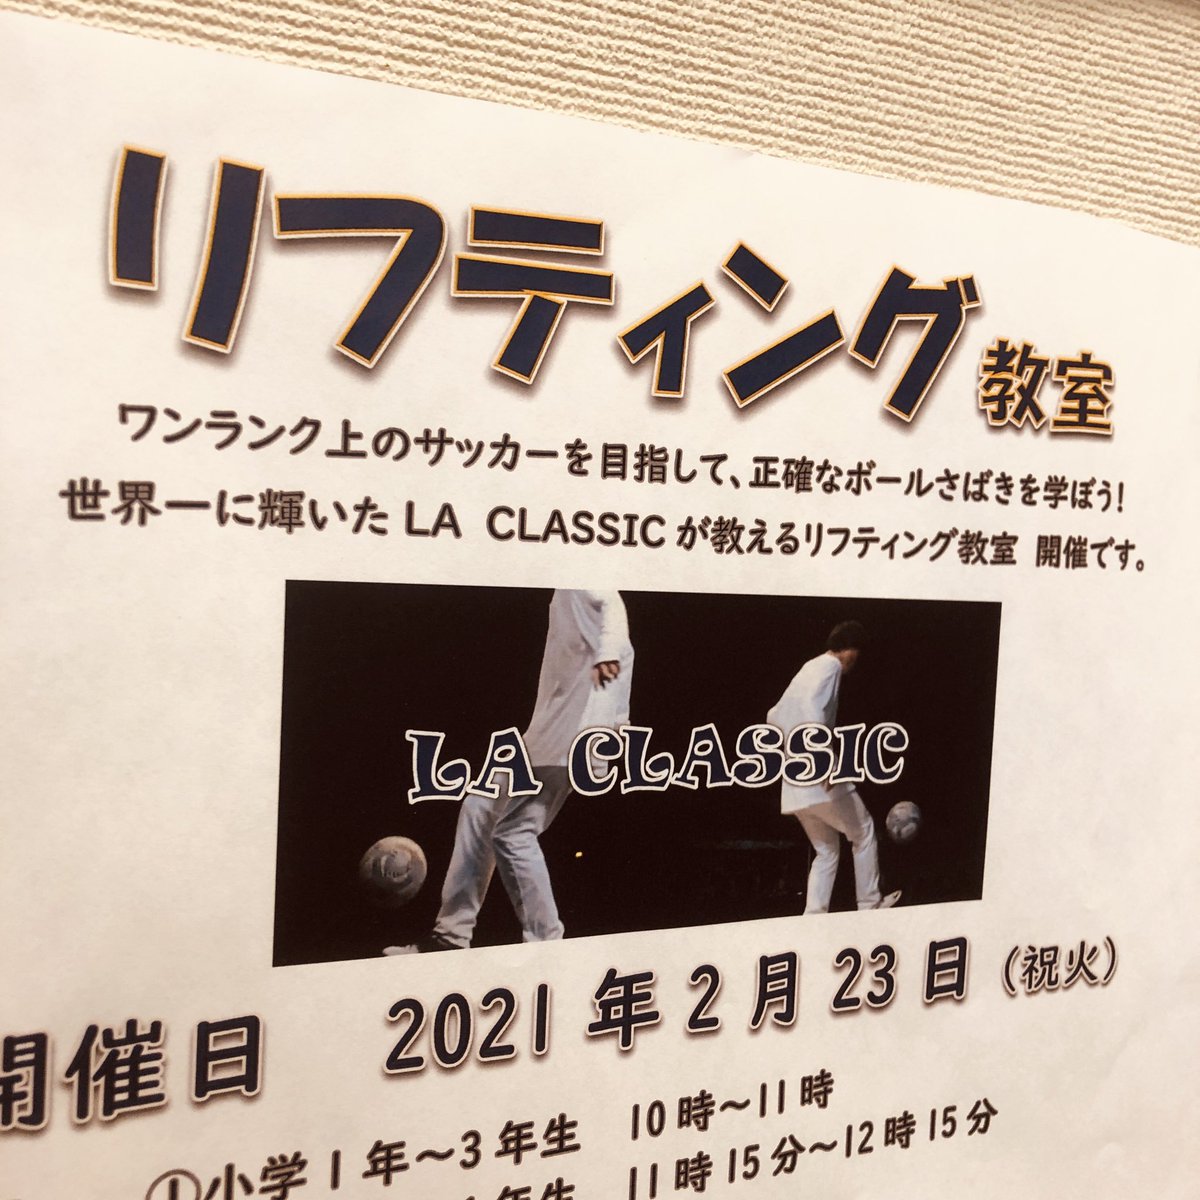 リフティング世界一コンビ La Classic ラ クラシック Yosshiyuji Twitter